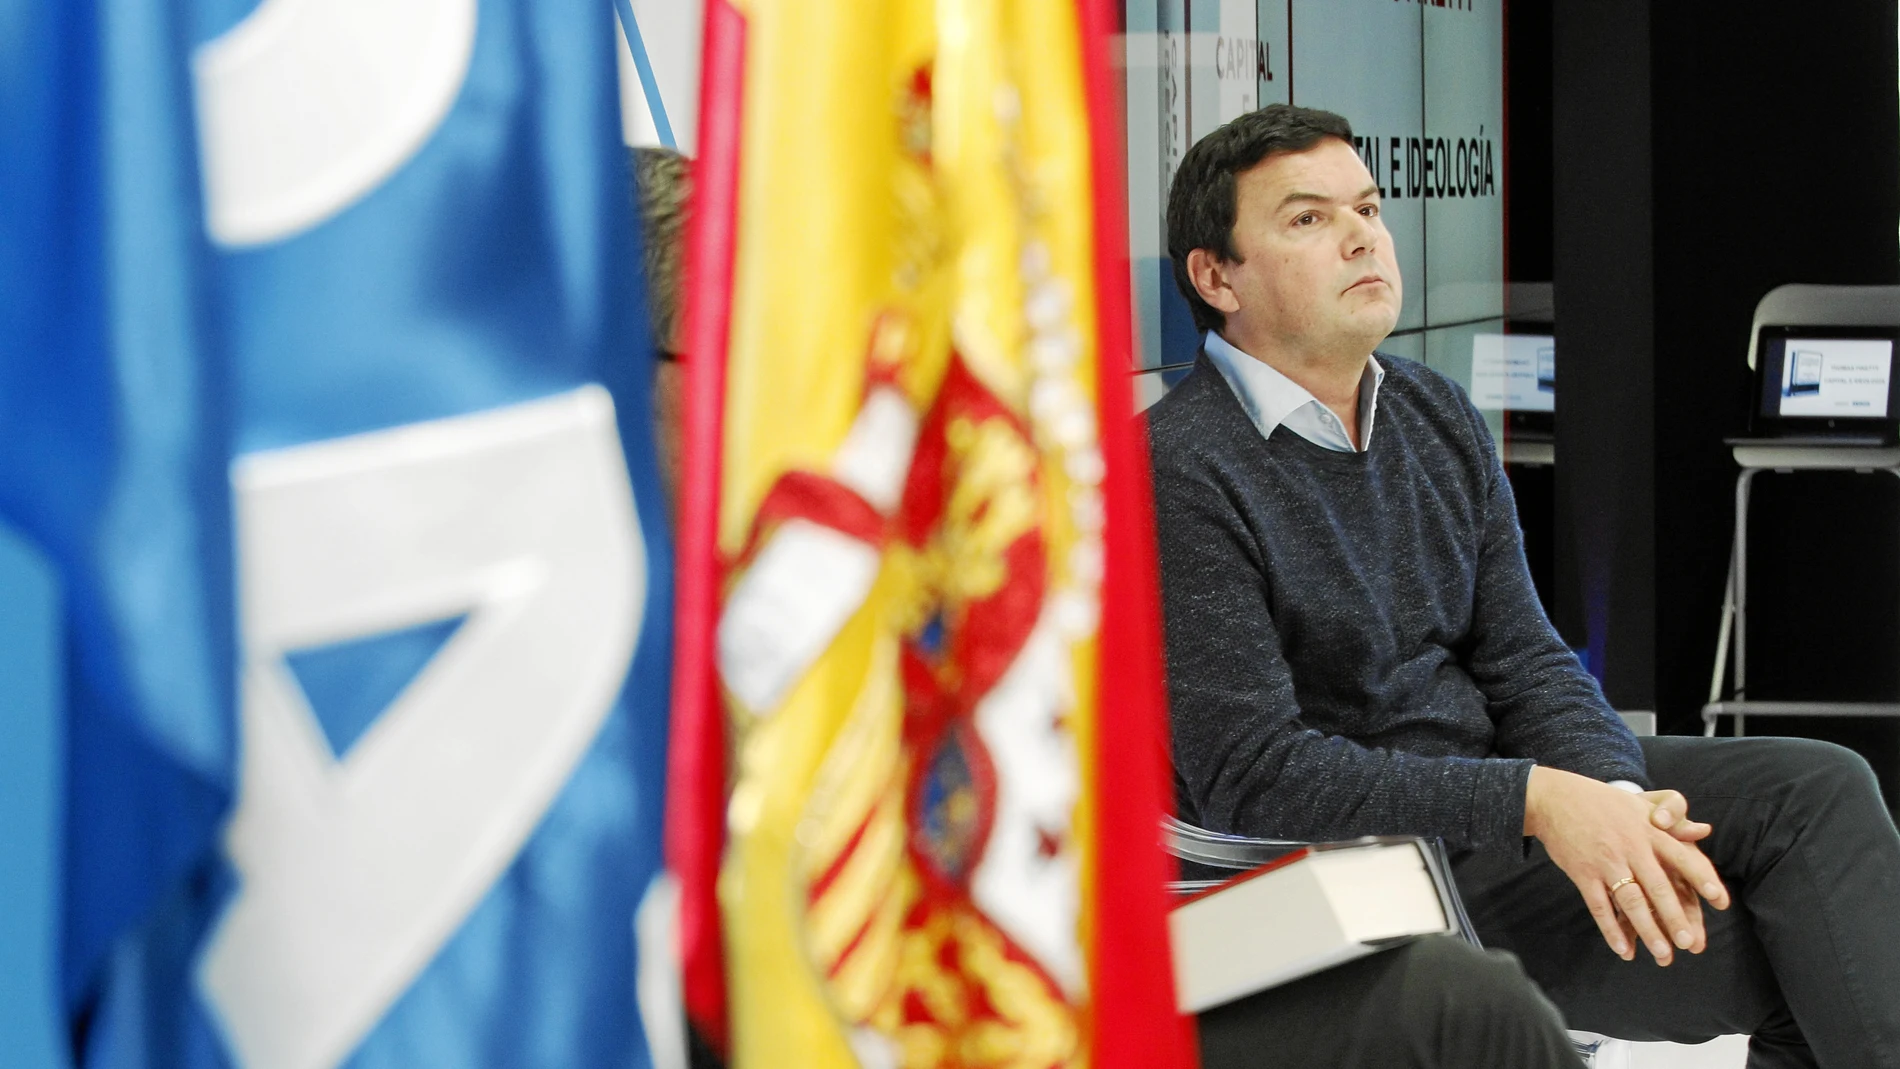 El economista francés Thomas Piketty, durante la conferencia que ofreció ayer en la sede del diario. Fotos: Connie G. Santos / Jesús G. Feria